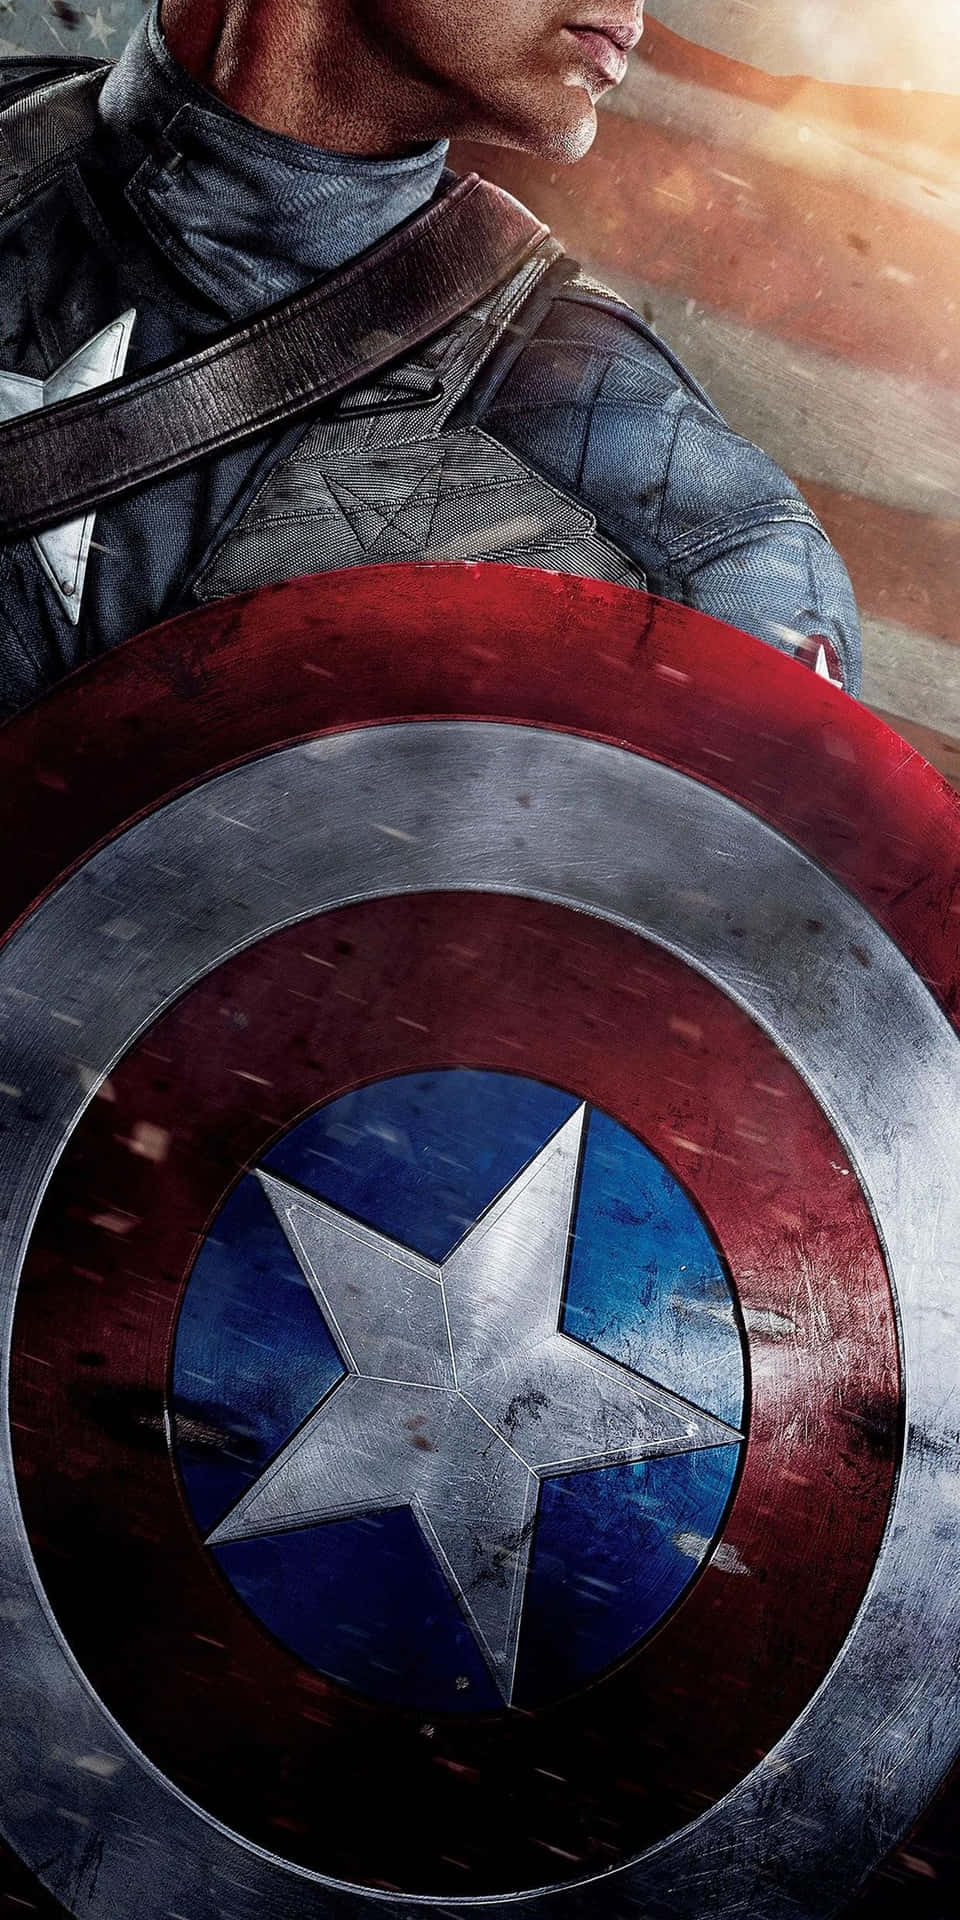 Fondod'arte Grafica Con Lo Scudo Di Captain America Per Il Pixel 3